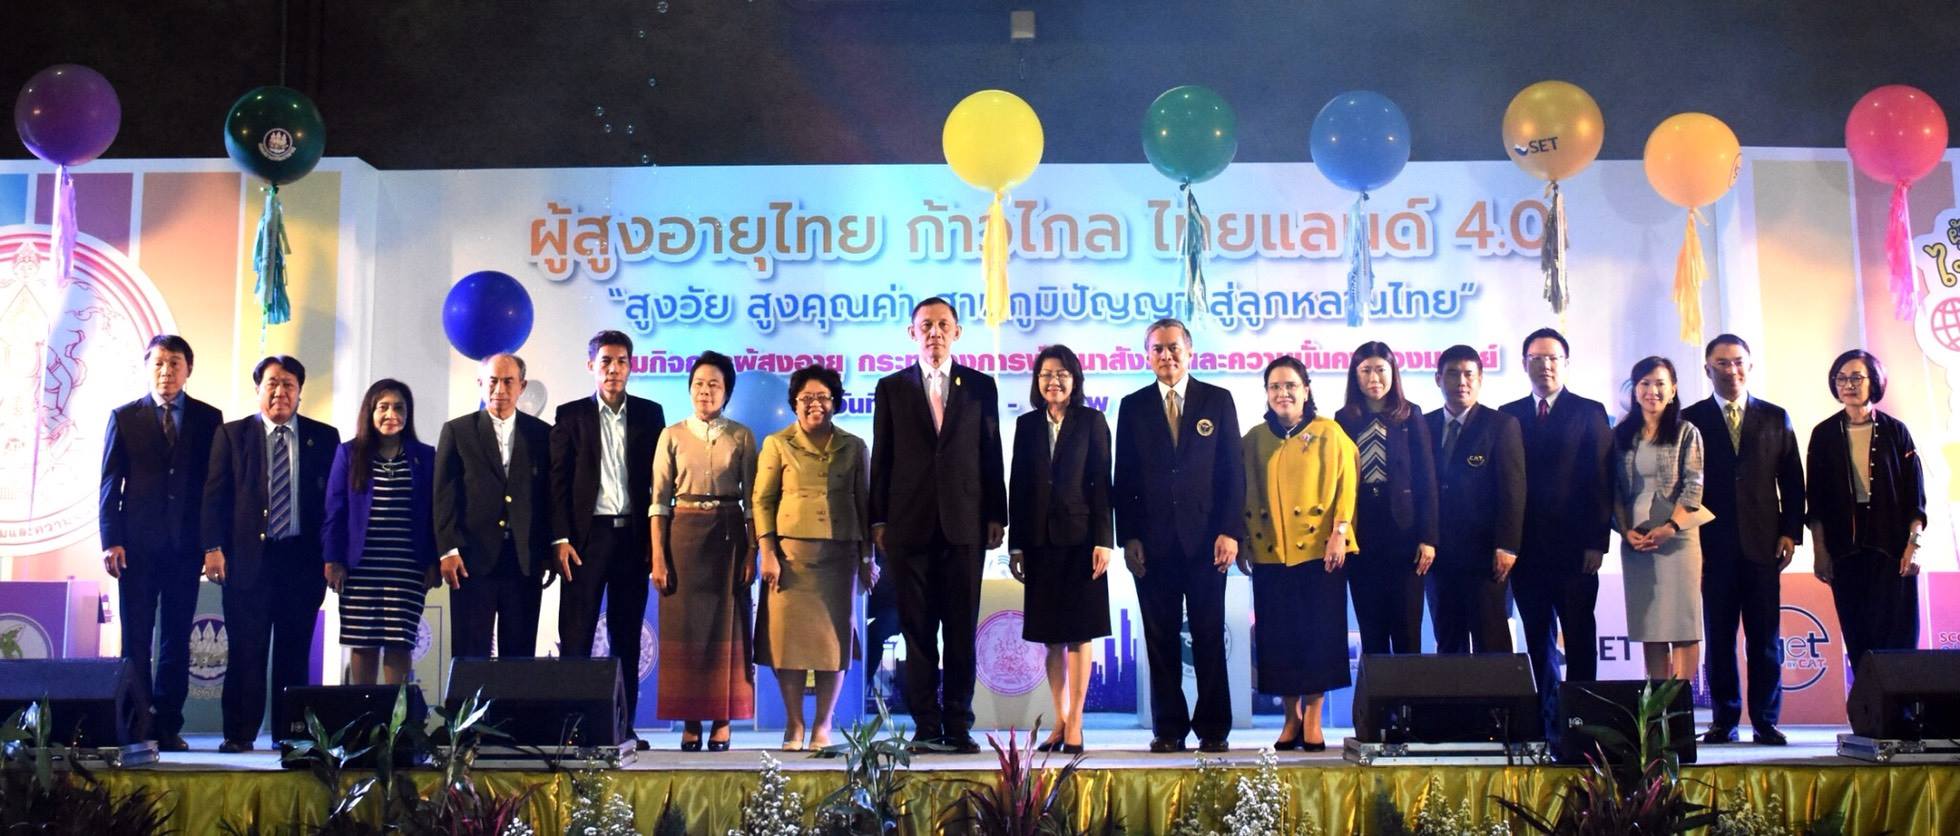 นวัตกรรมผู้สูงอายุไทยเพื่อยกระดับพัฒนาคุณภาพชีวิตสู่ไทยแลนด์ 4.0